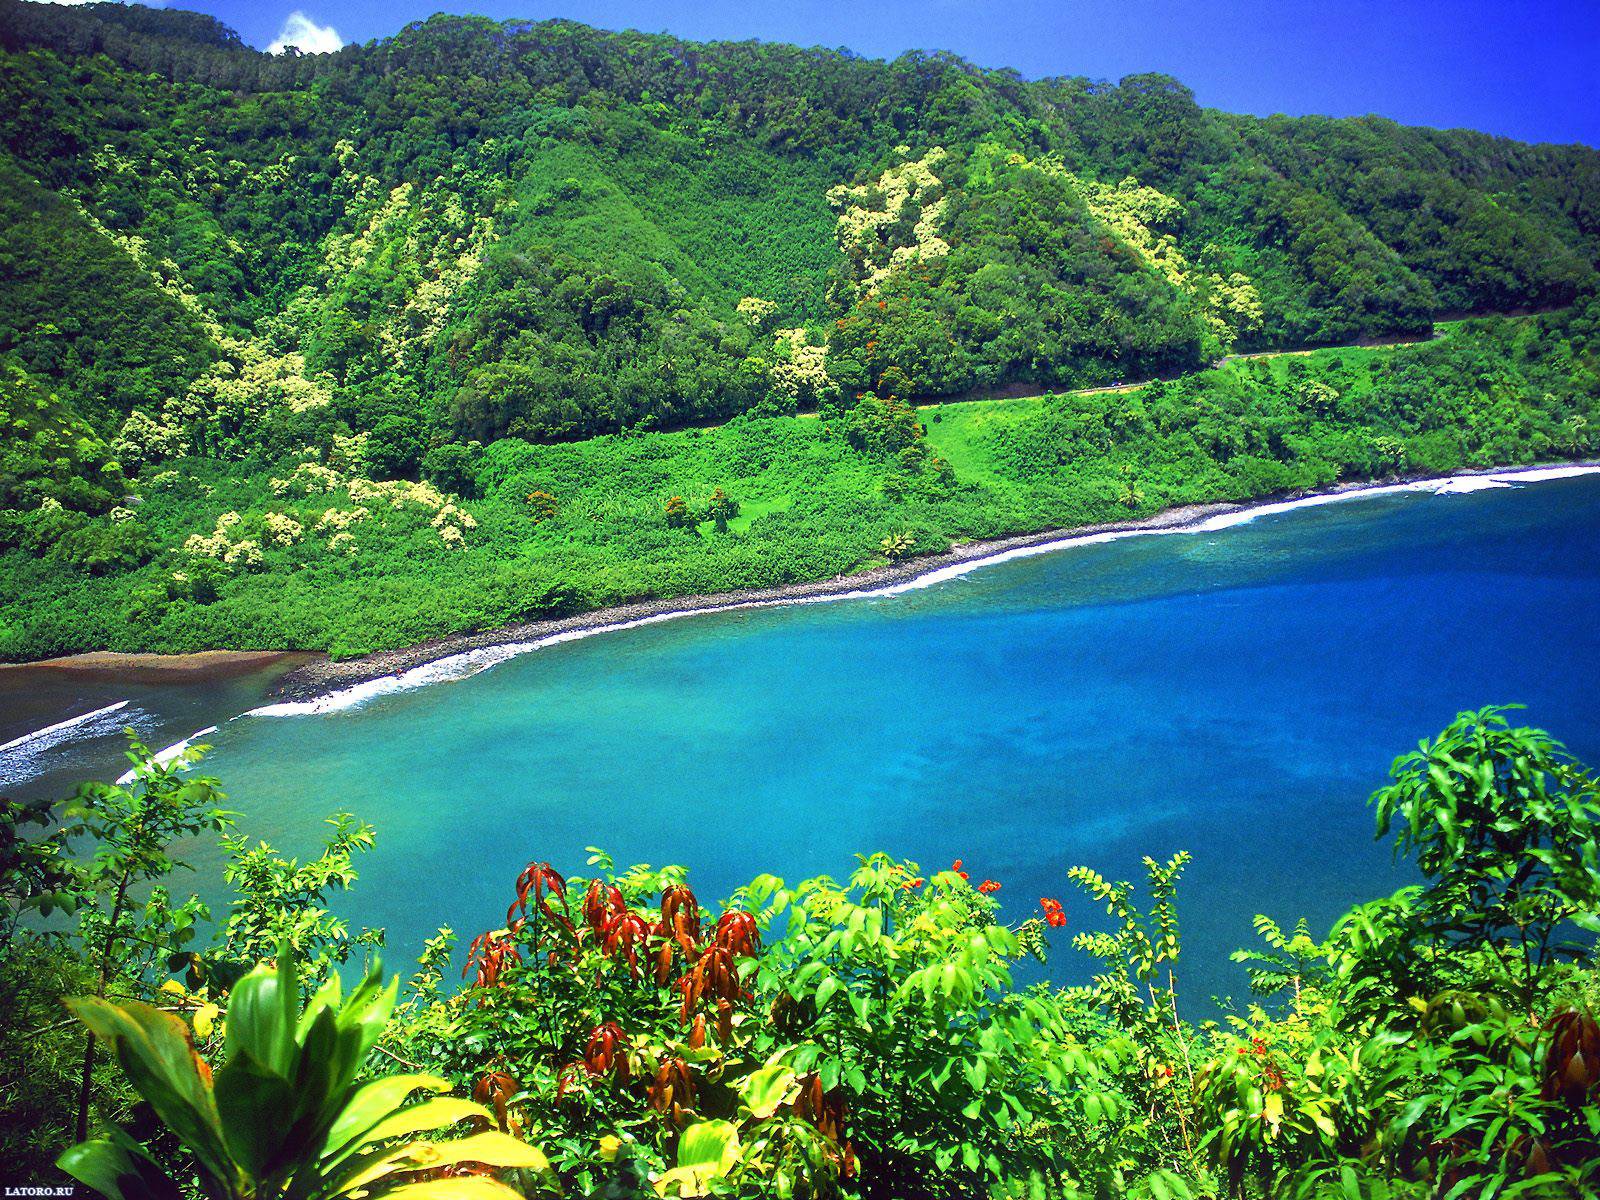 Hawaii Desktop Backgrounds